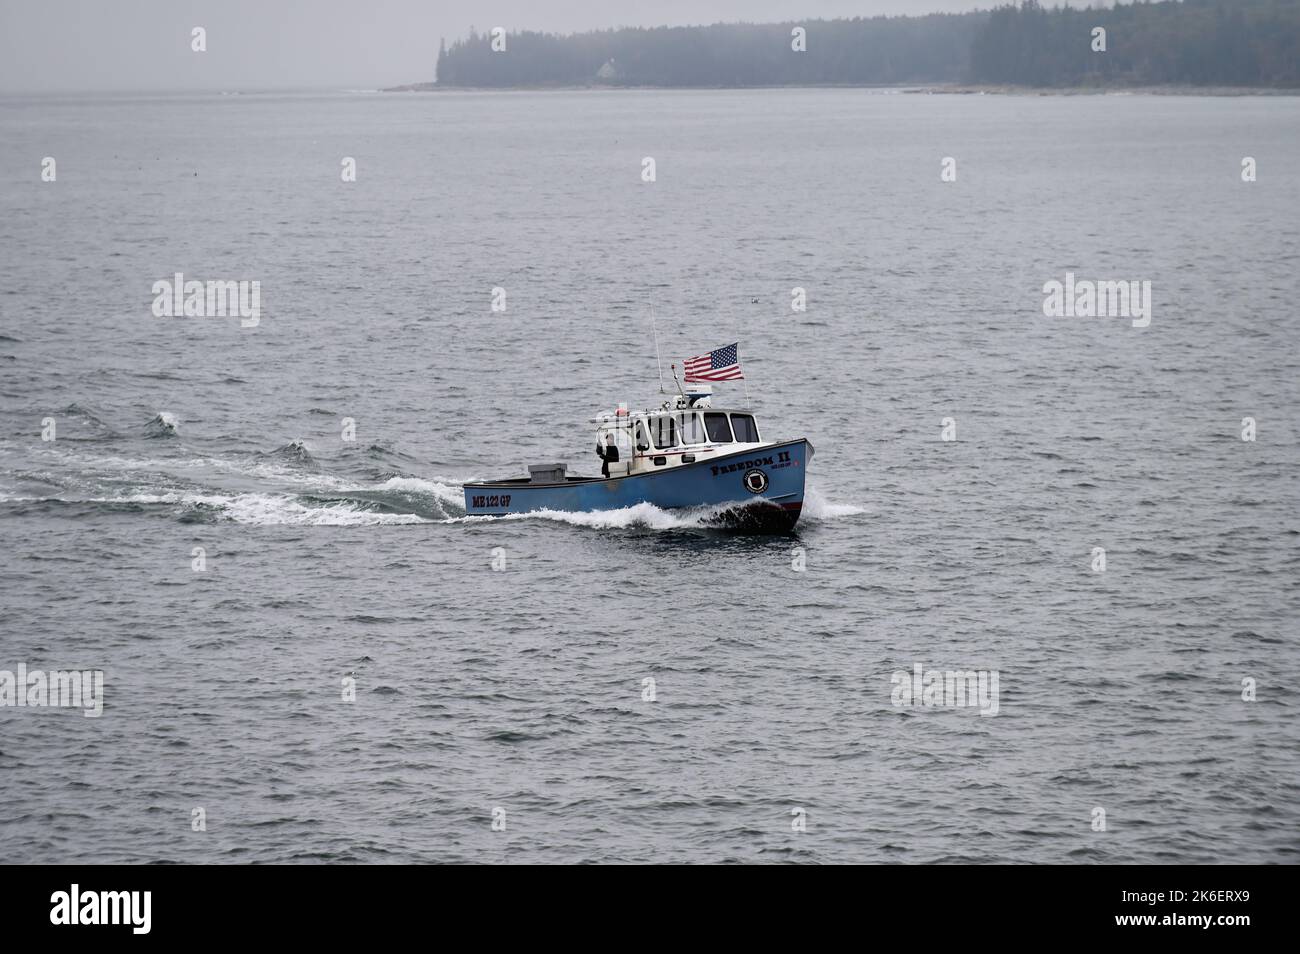 Parc national Acadia, Maine, États-Unis. Un seul bateau part de l'étendue de l'océan Atlantique vers le havre de sécurité de Bass Harbour. Banque D'Images